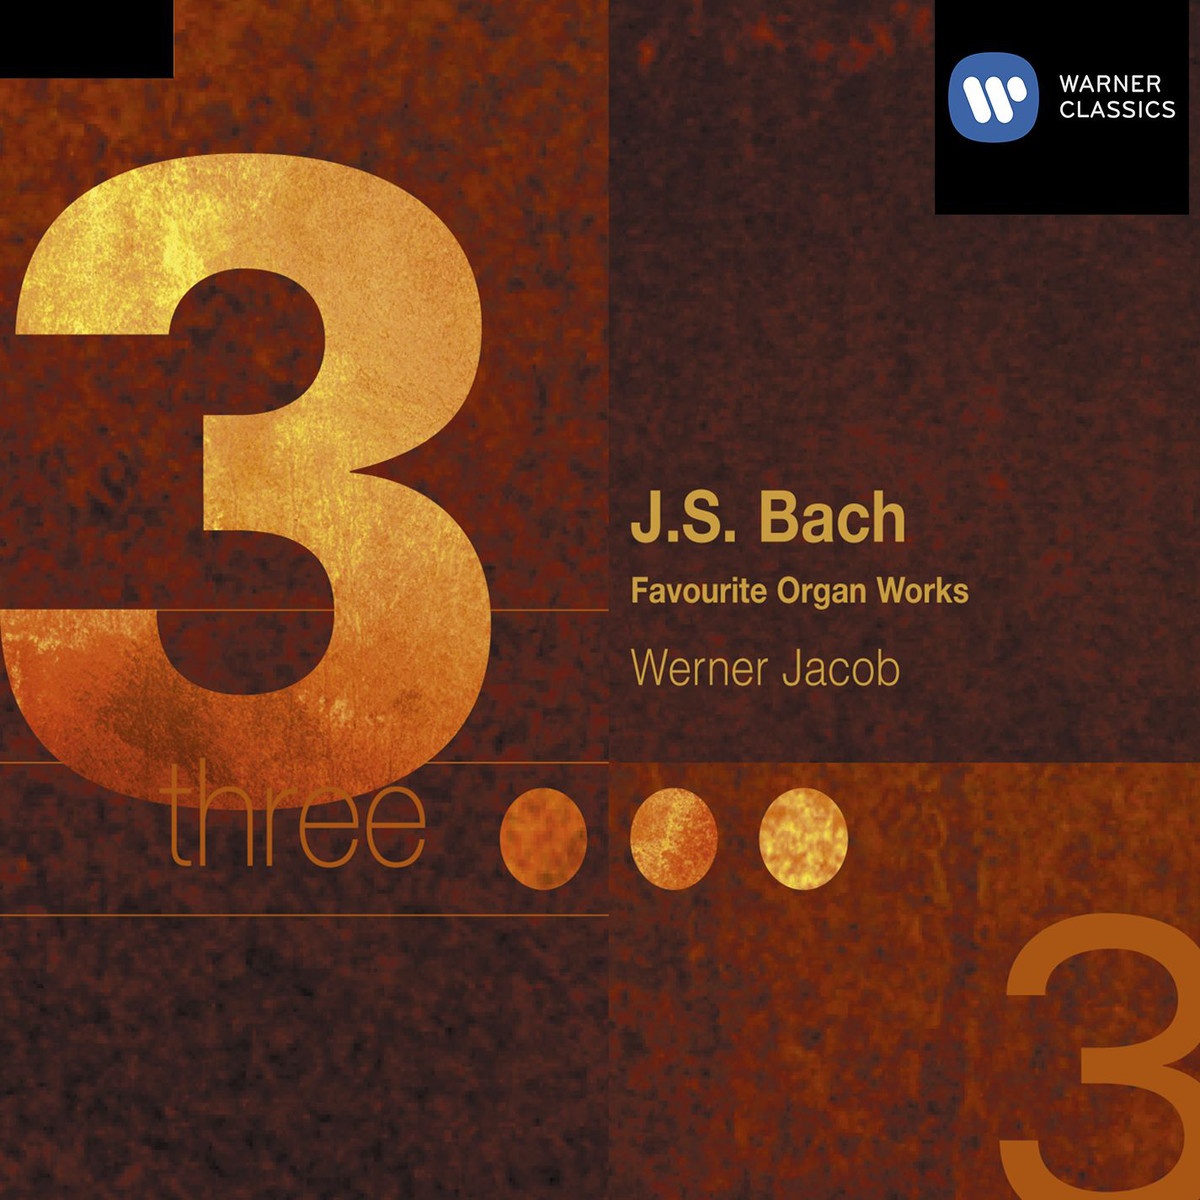 Sechs Schü blerChor le Nr. 16 BWV 645650 1992 Digital Remaster: Nr. 4  Meine Seele erhebet den Herren, BWV 648